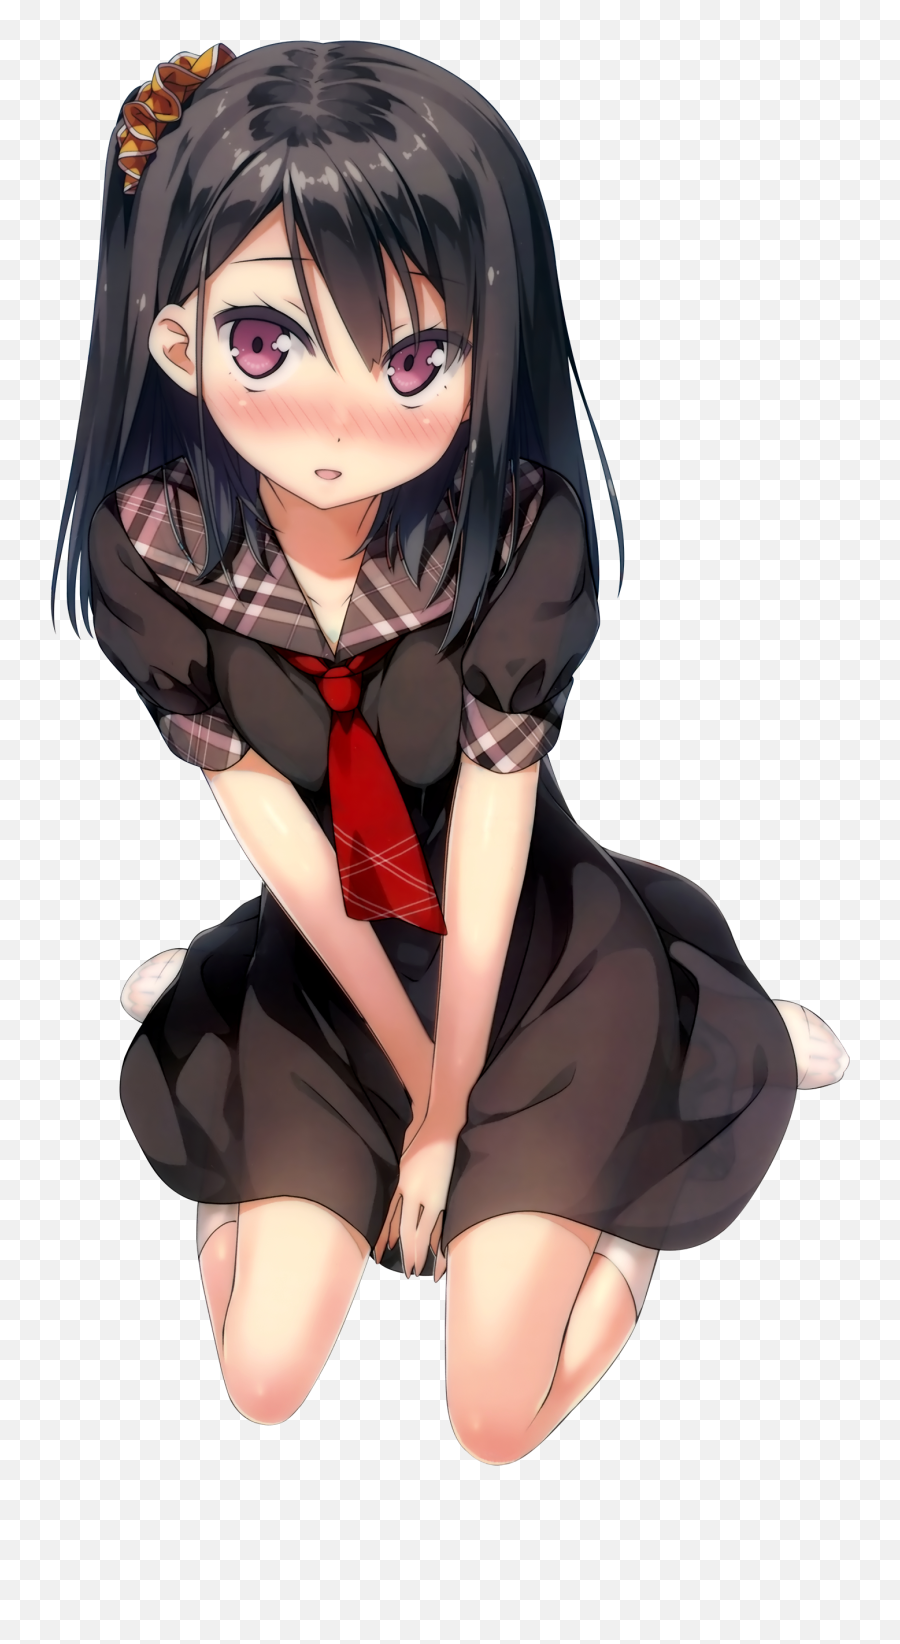 Anime Girl Blushing Transparent - Blushing Anime Girl Emoji,Anime Girl Png